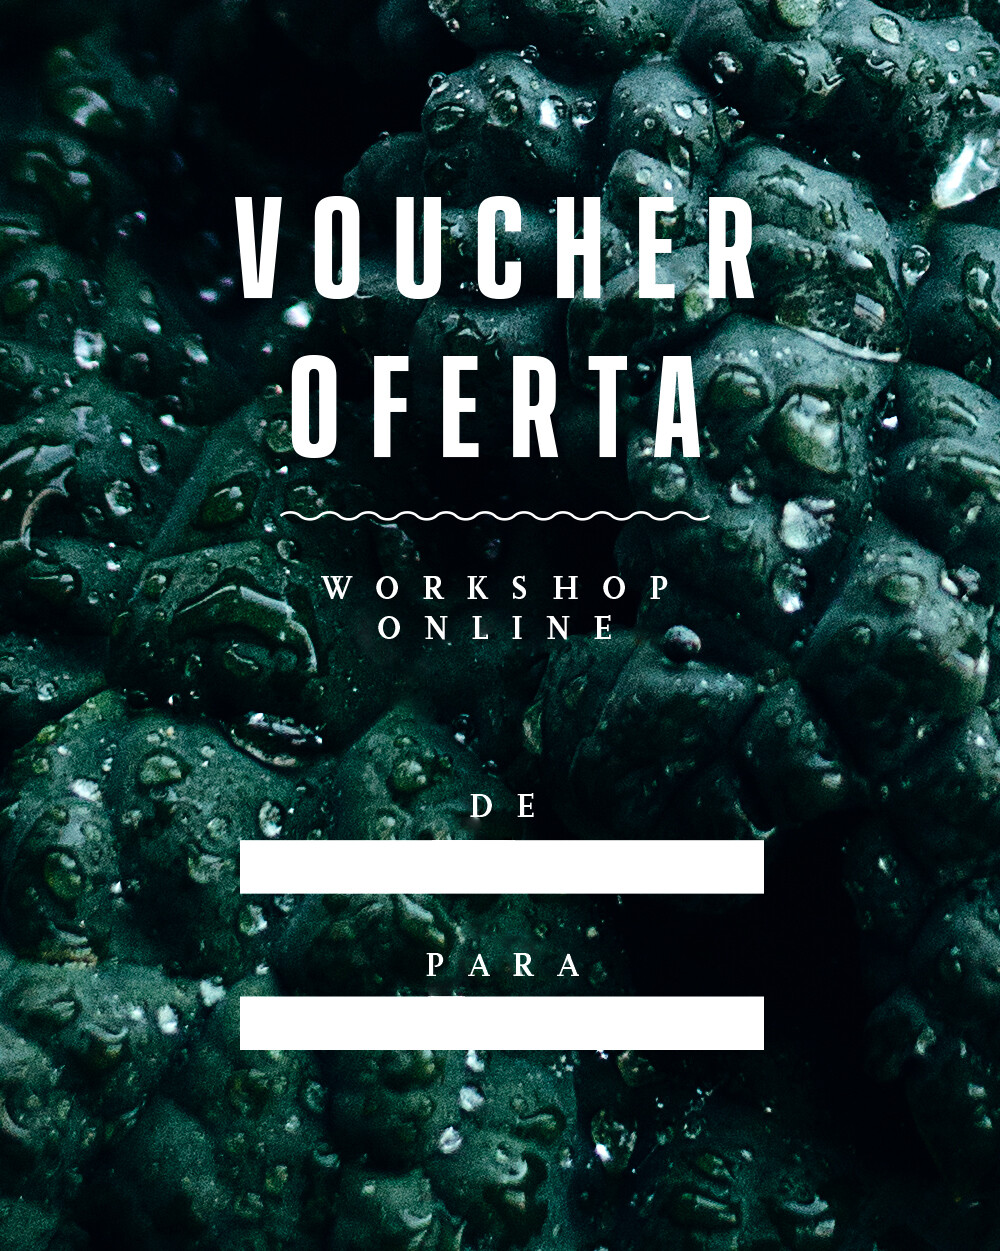 Voucher Oferta - Workshop Online